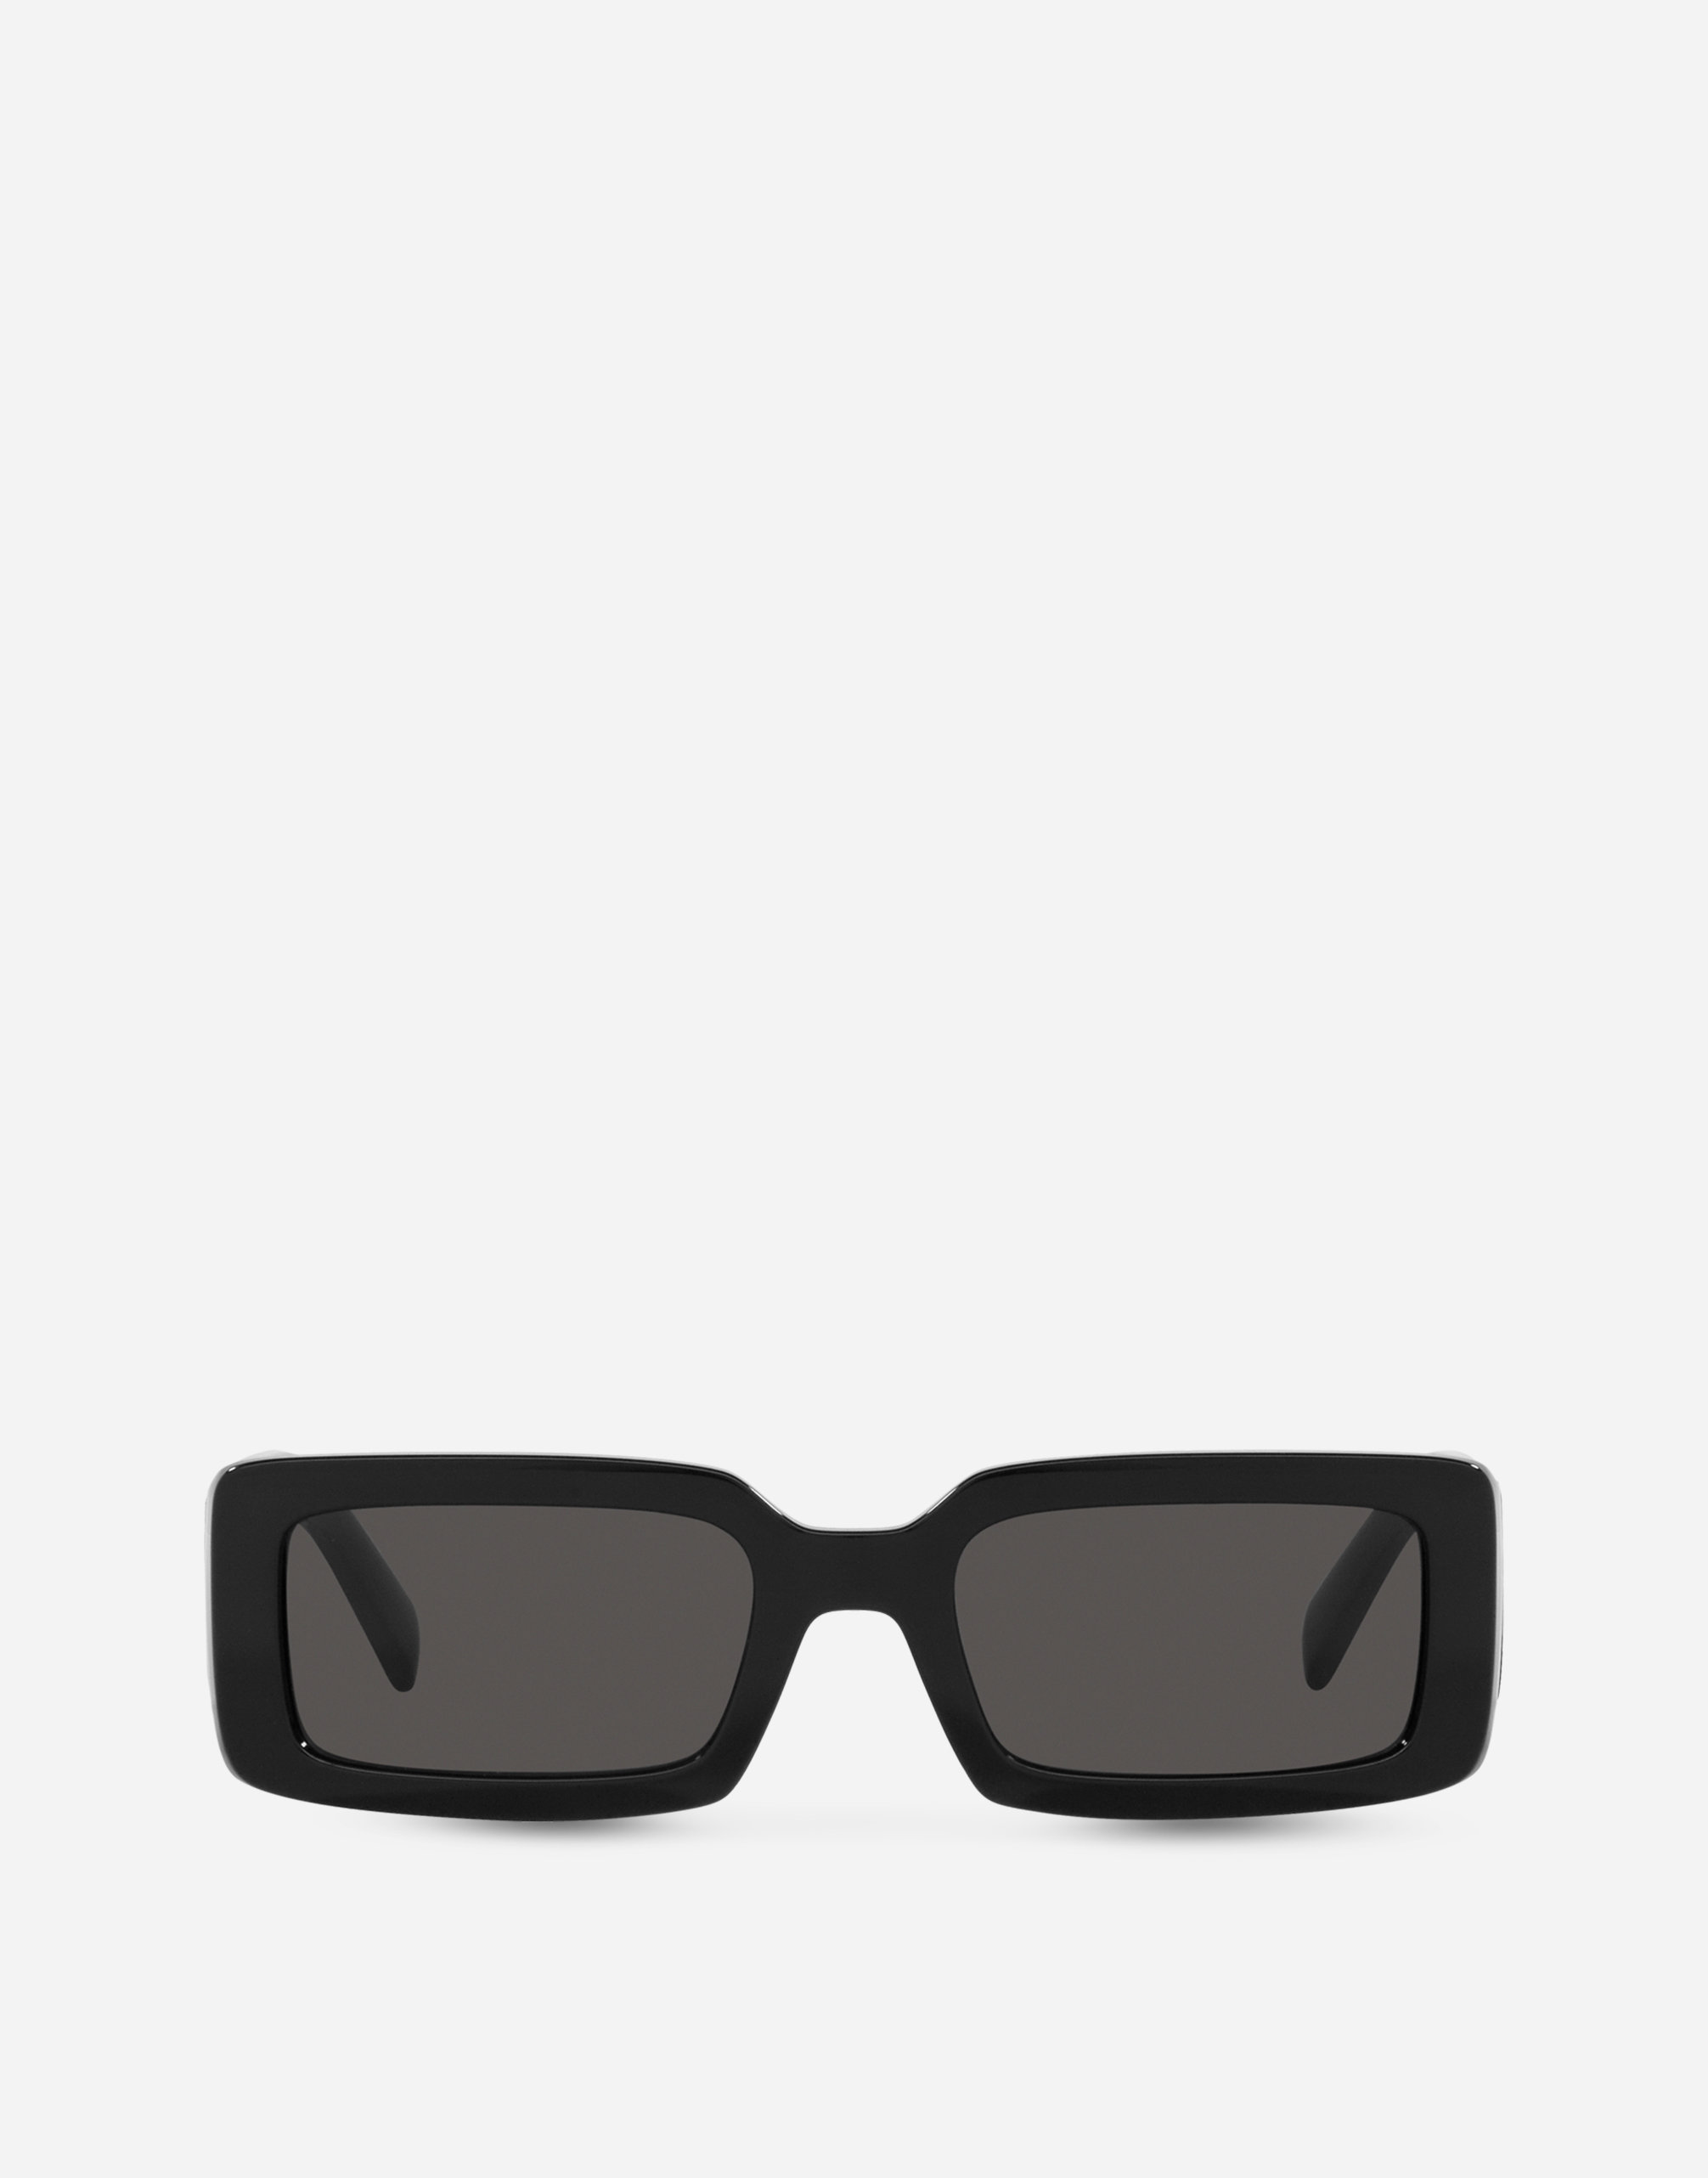 DG Elastic Sunglasses in Black